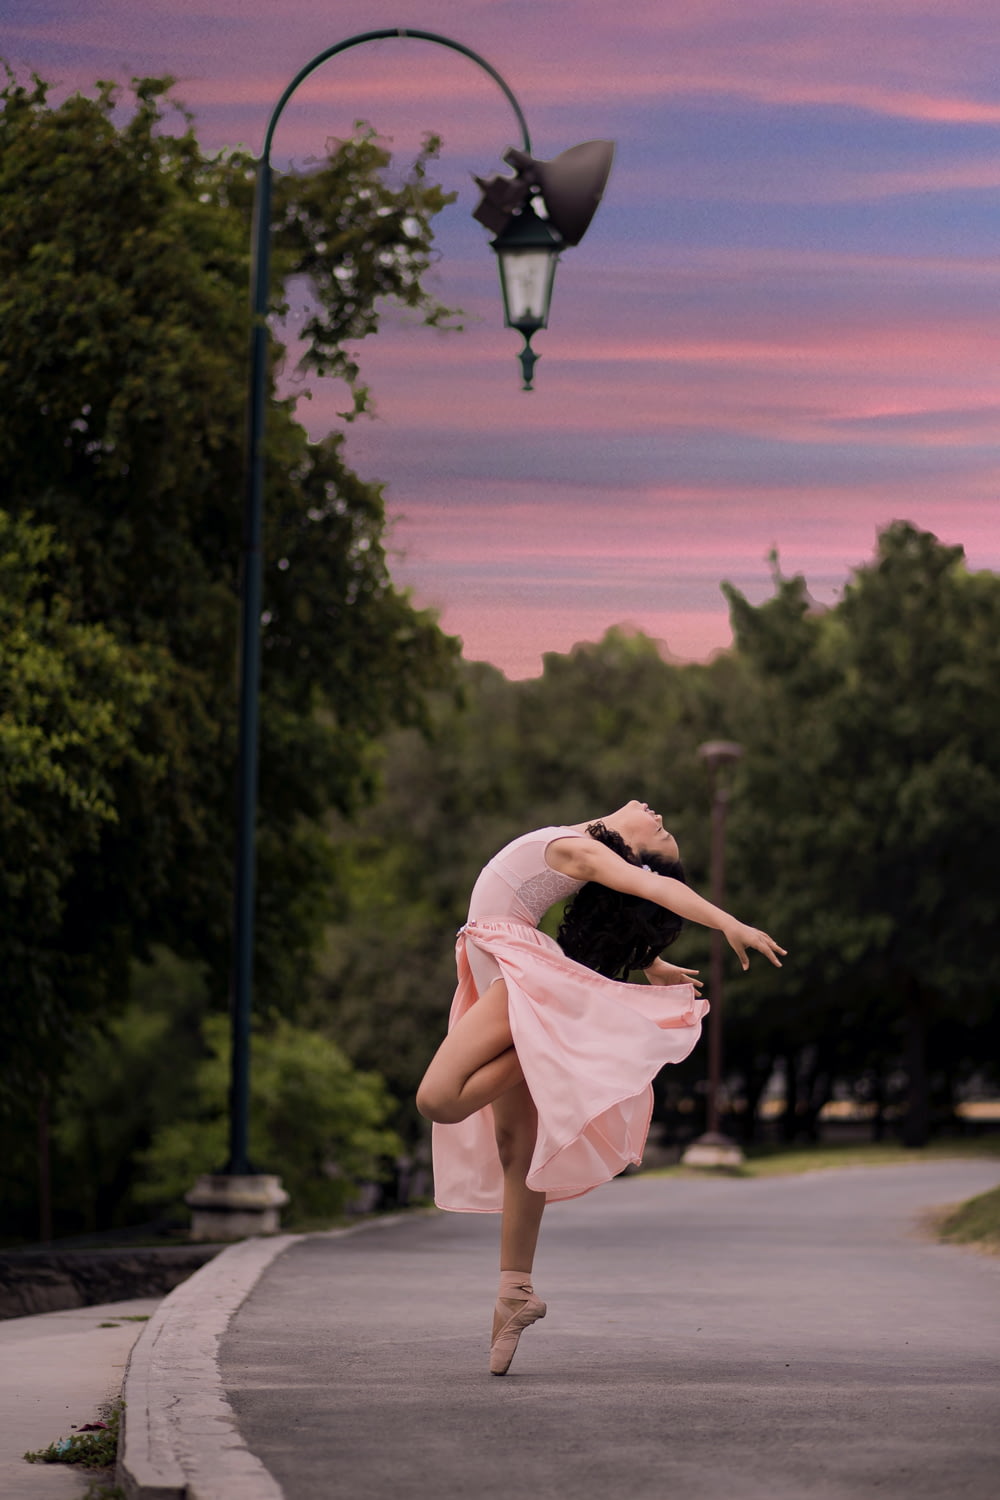 danseuse de ballet sur la route à côté d’un lampadaire